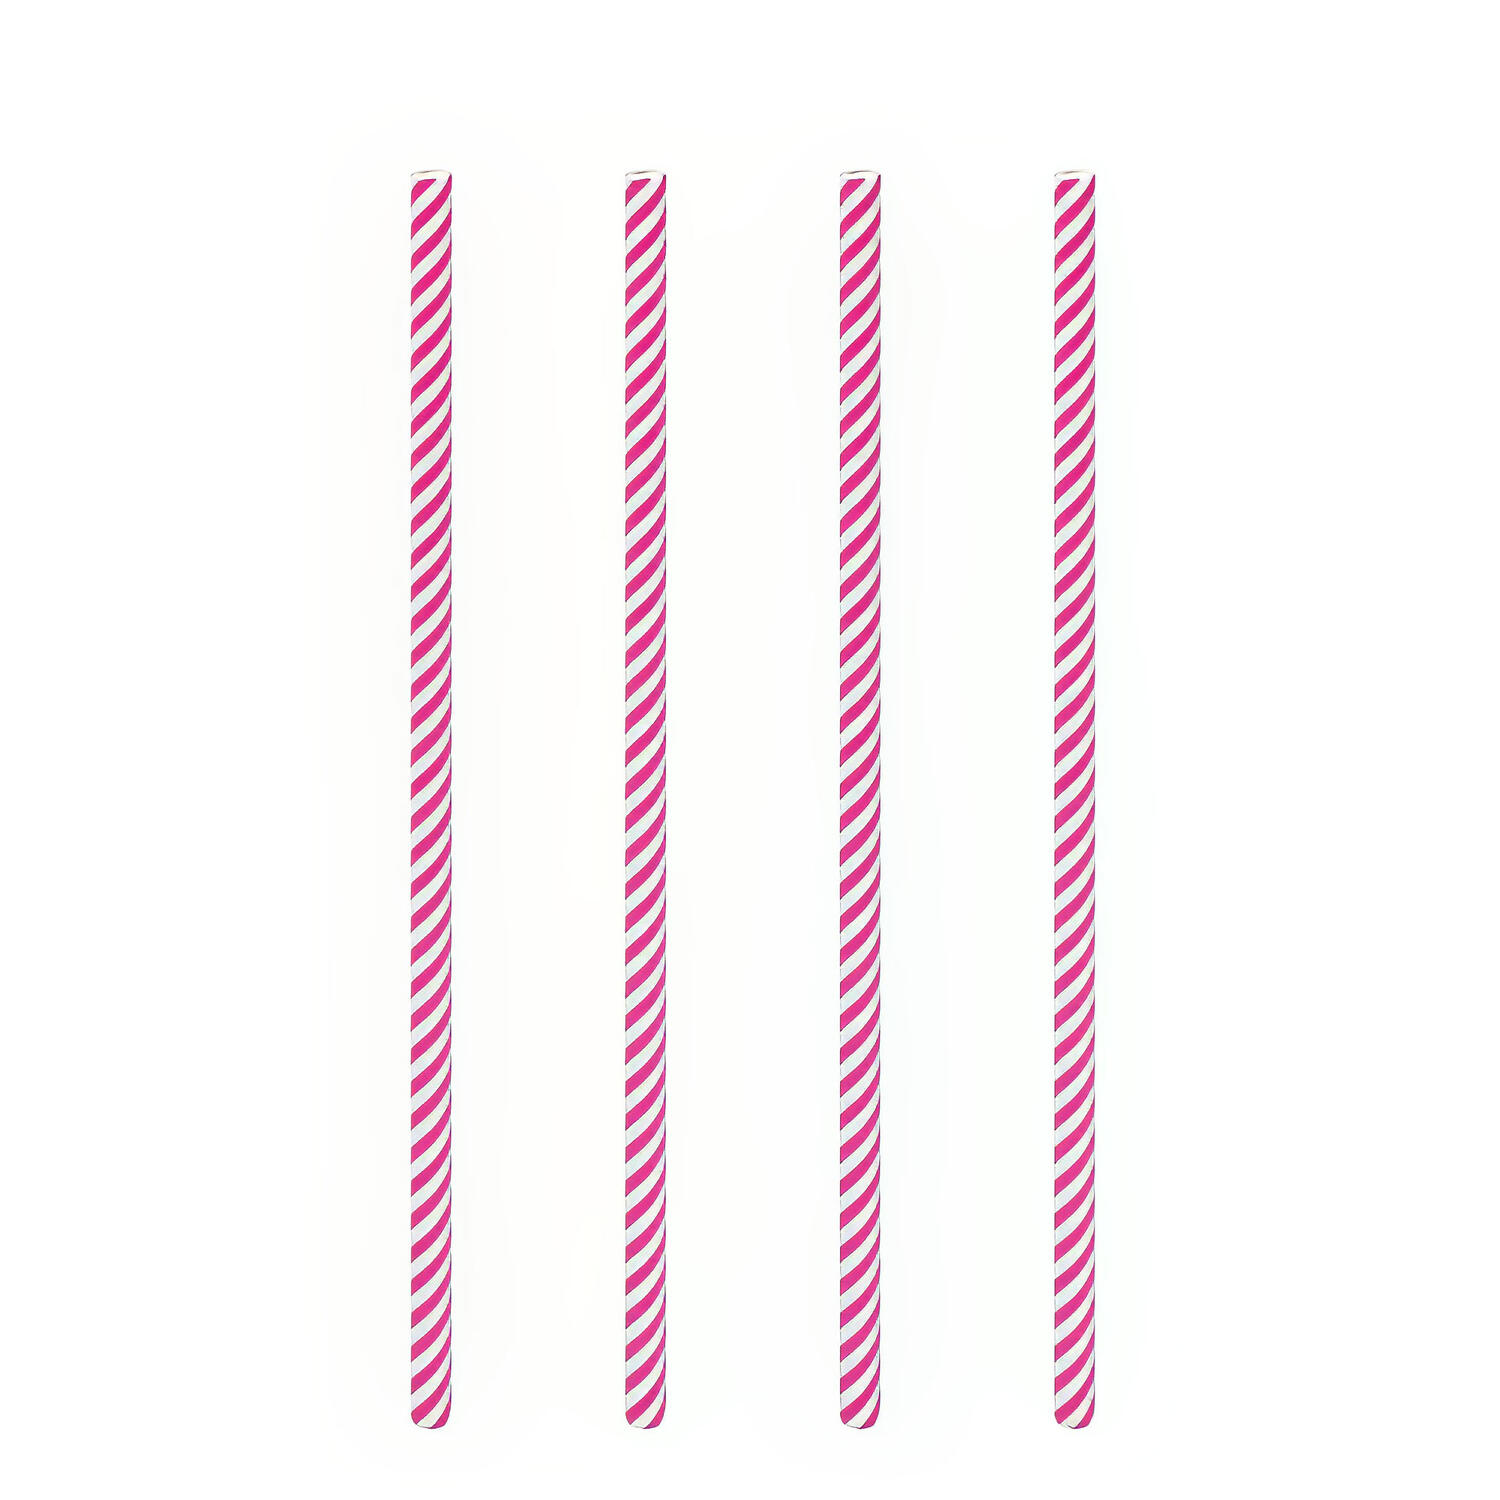 Trinkhalme aus Papier pink gestreift 6mm, 21cm, 100 Stk.